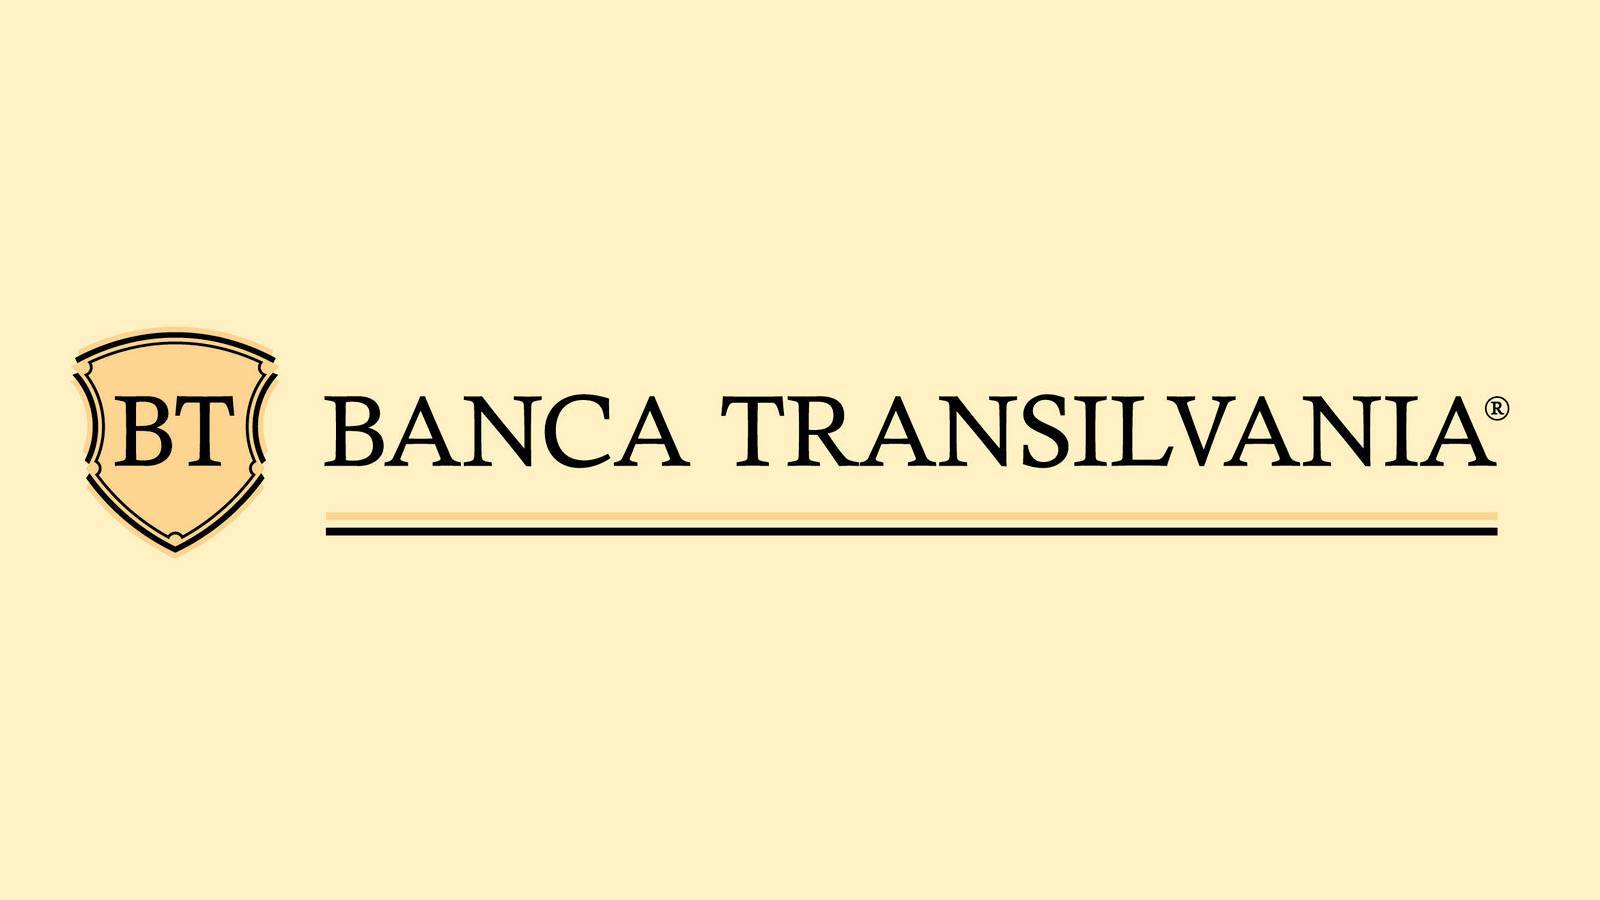 Décision de BANCA Transilvania annoncée OFFICIELLEMENT Les clients doivent le savoir